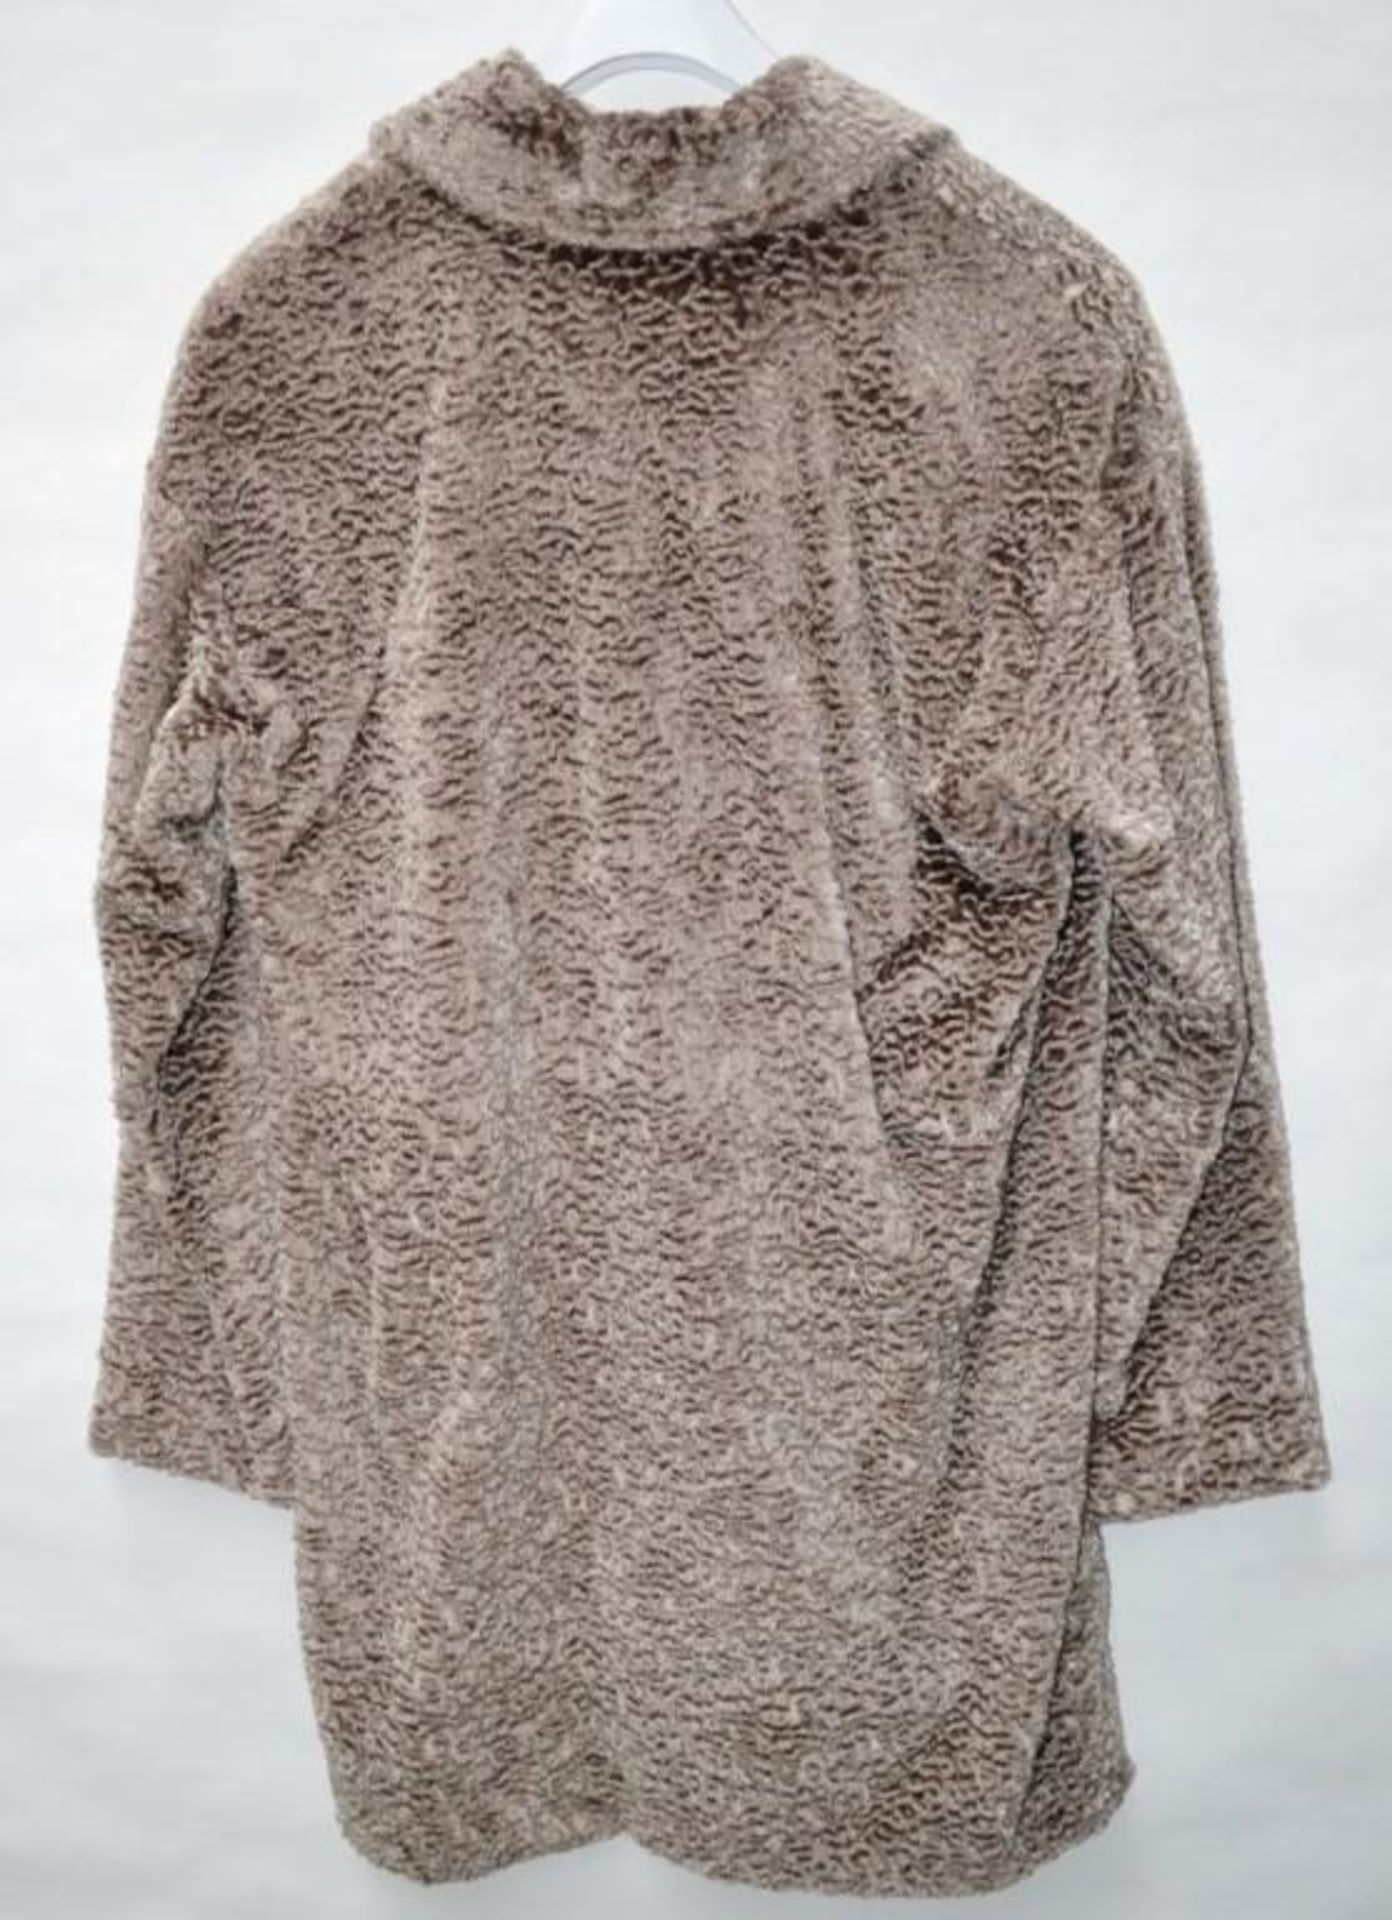 1 x Steilmann Womens Vintage-Style Faux Fur Winter Coat - Colour: Mocha - Size 12 - CL210 - New Samp - Image 4 of 4